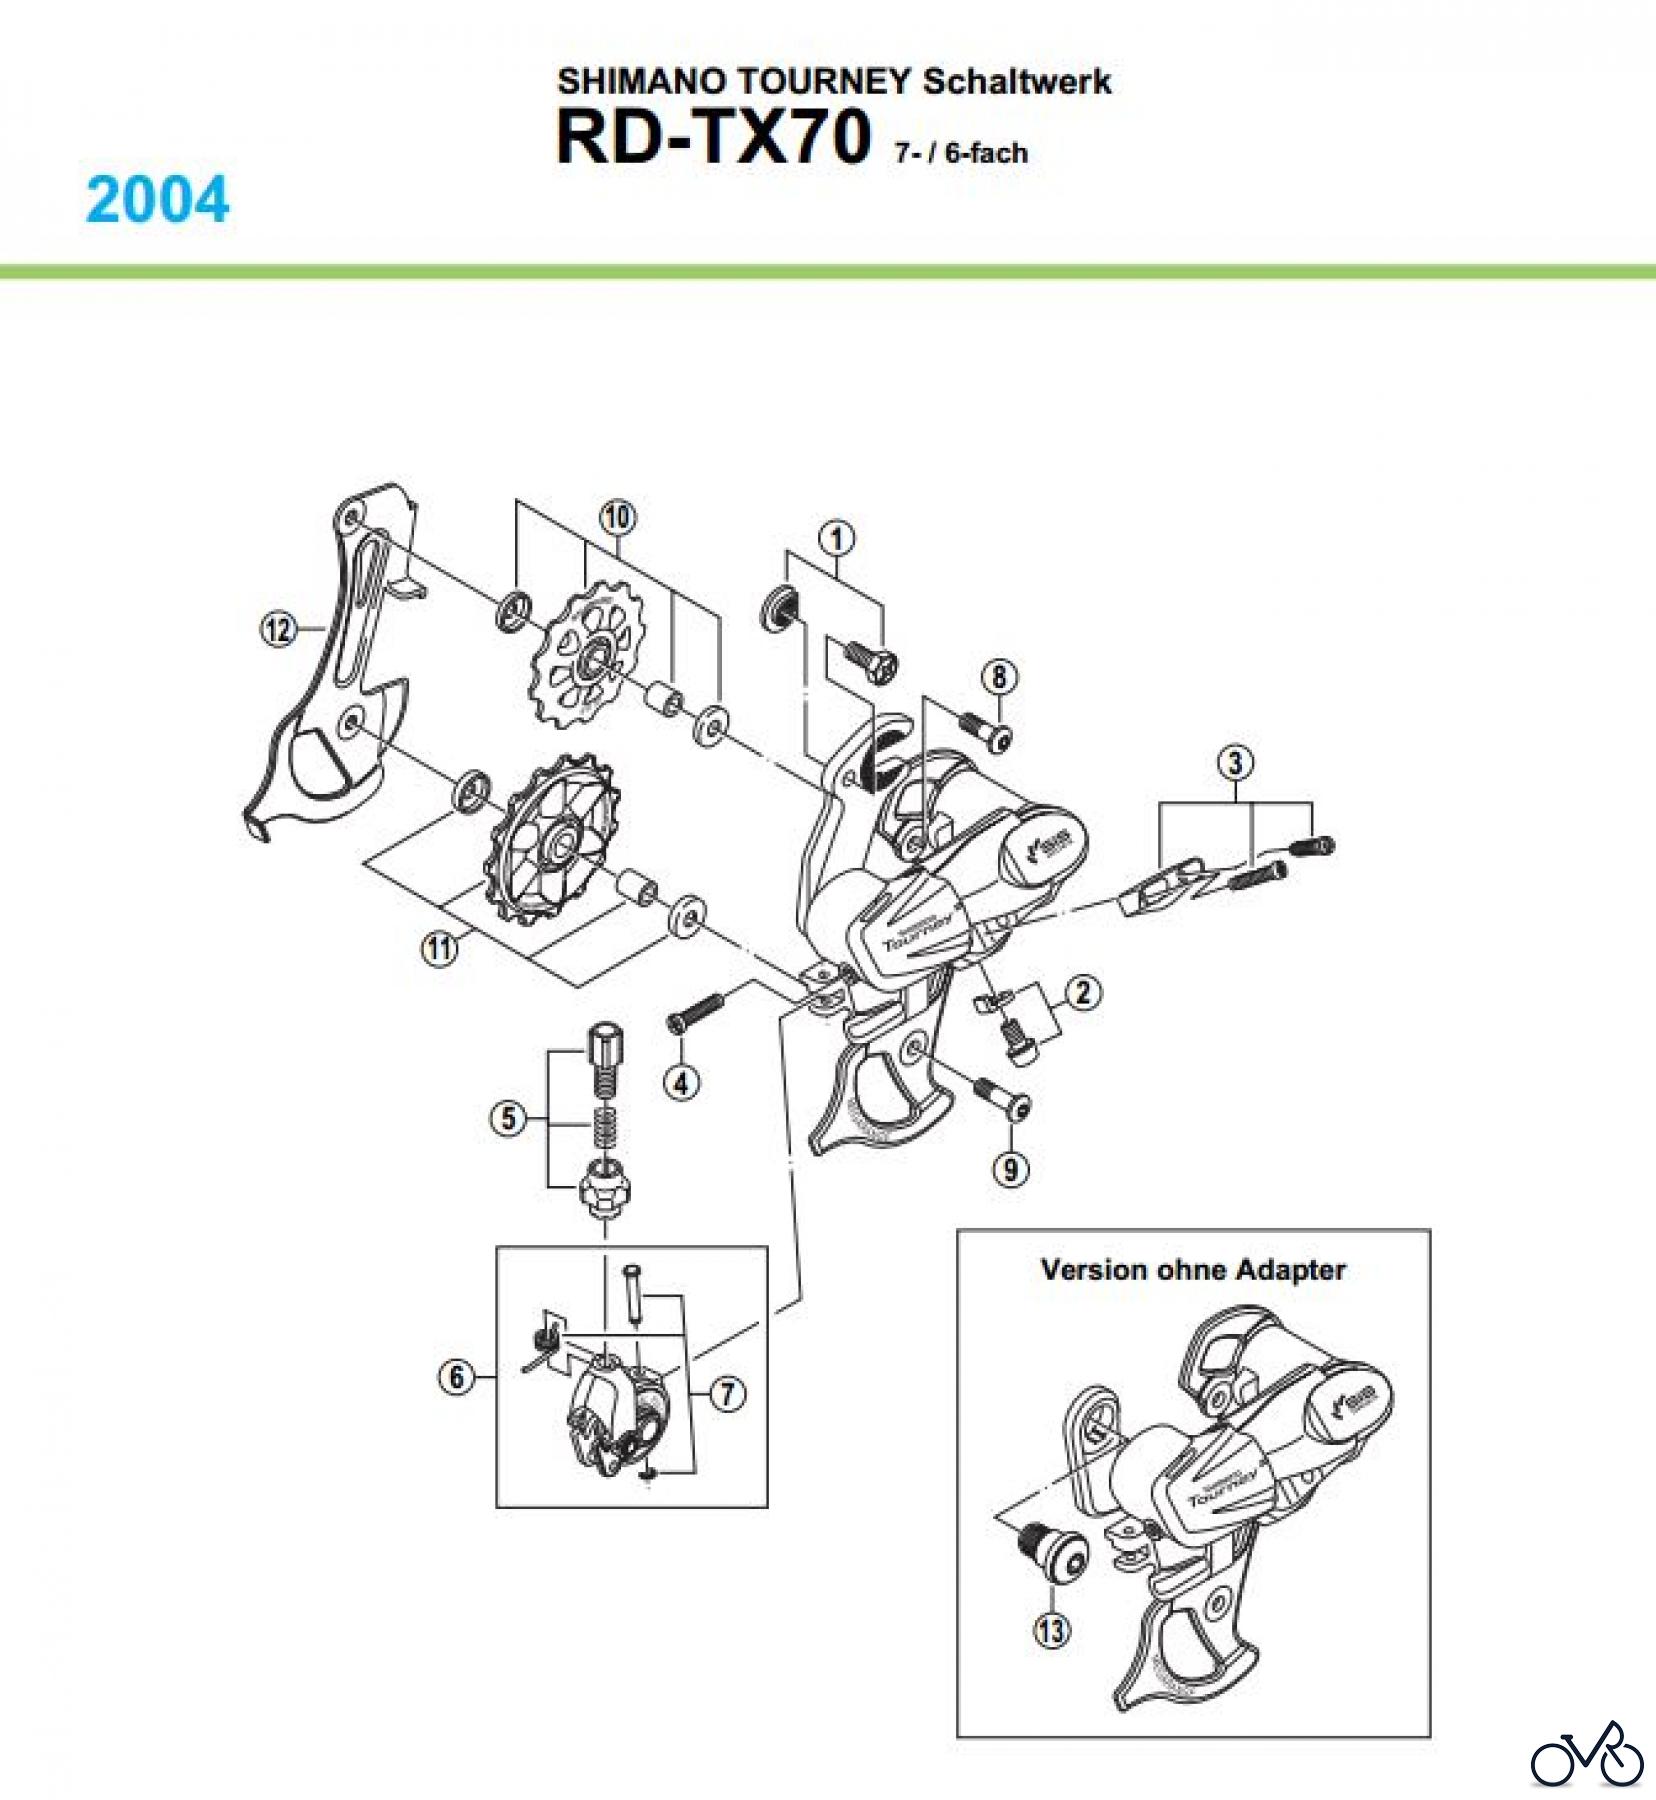  Shimano RD Rear Derailleur - Schaltwerk RD-TX70-04